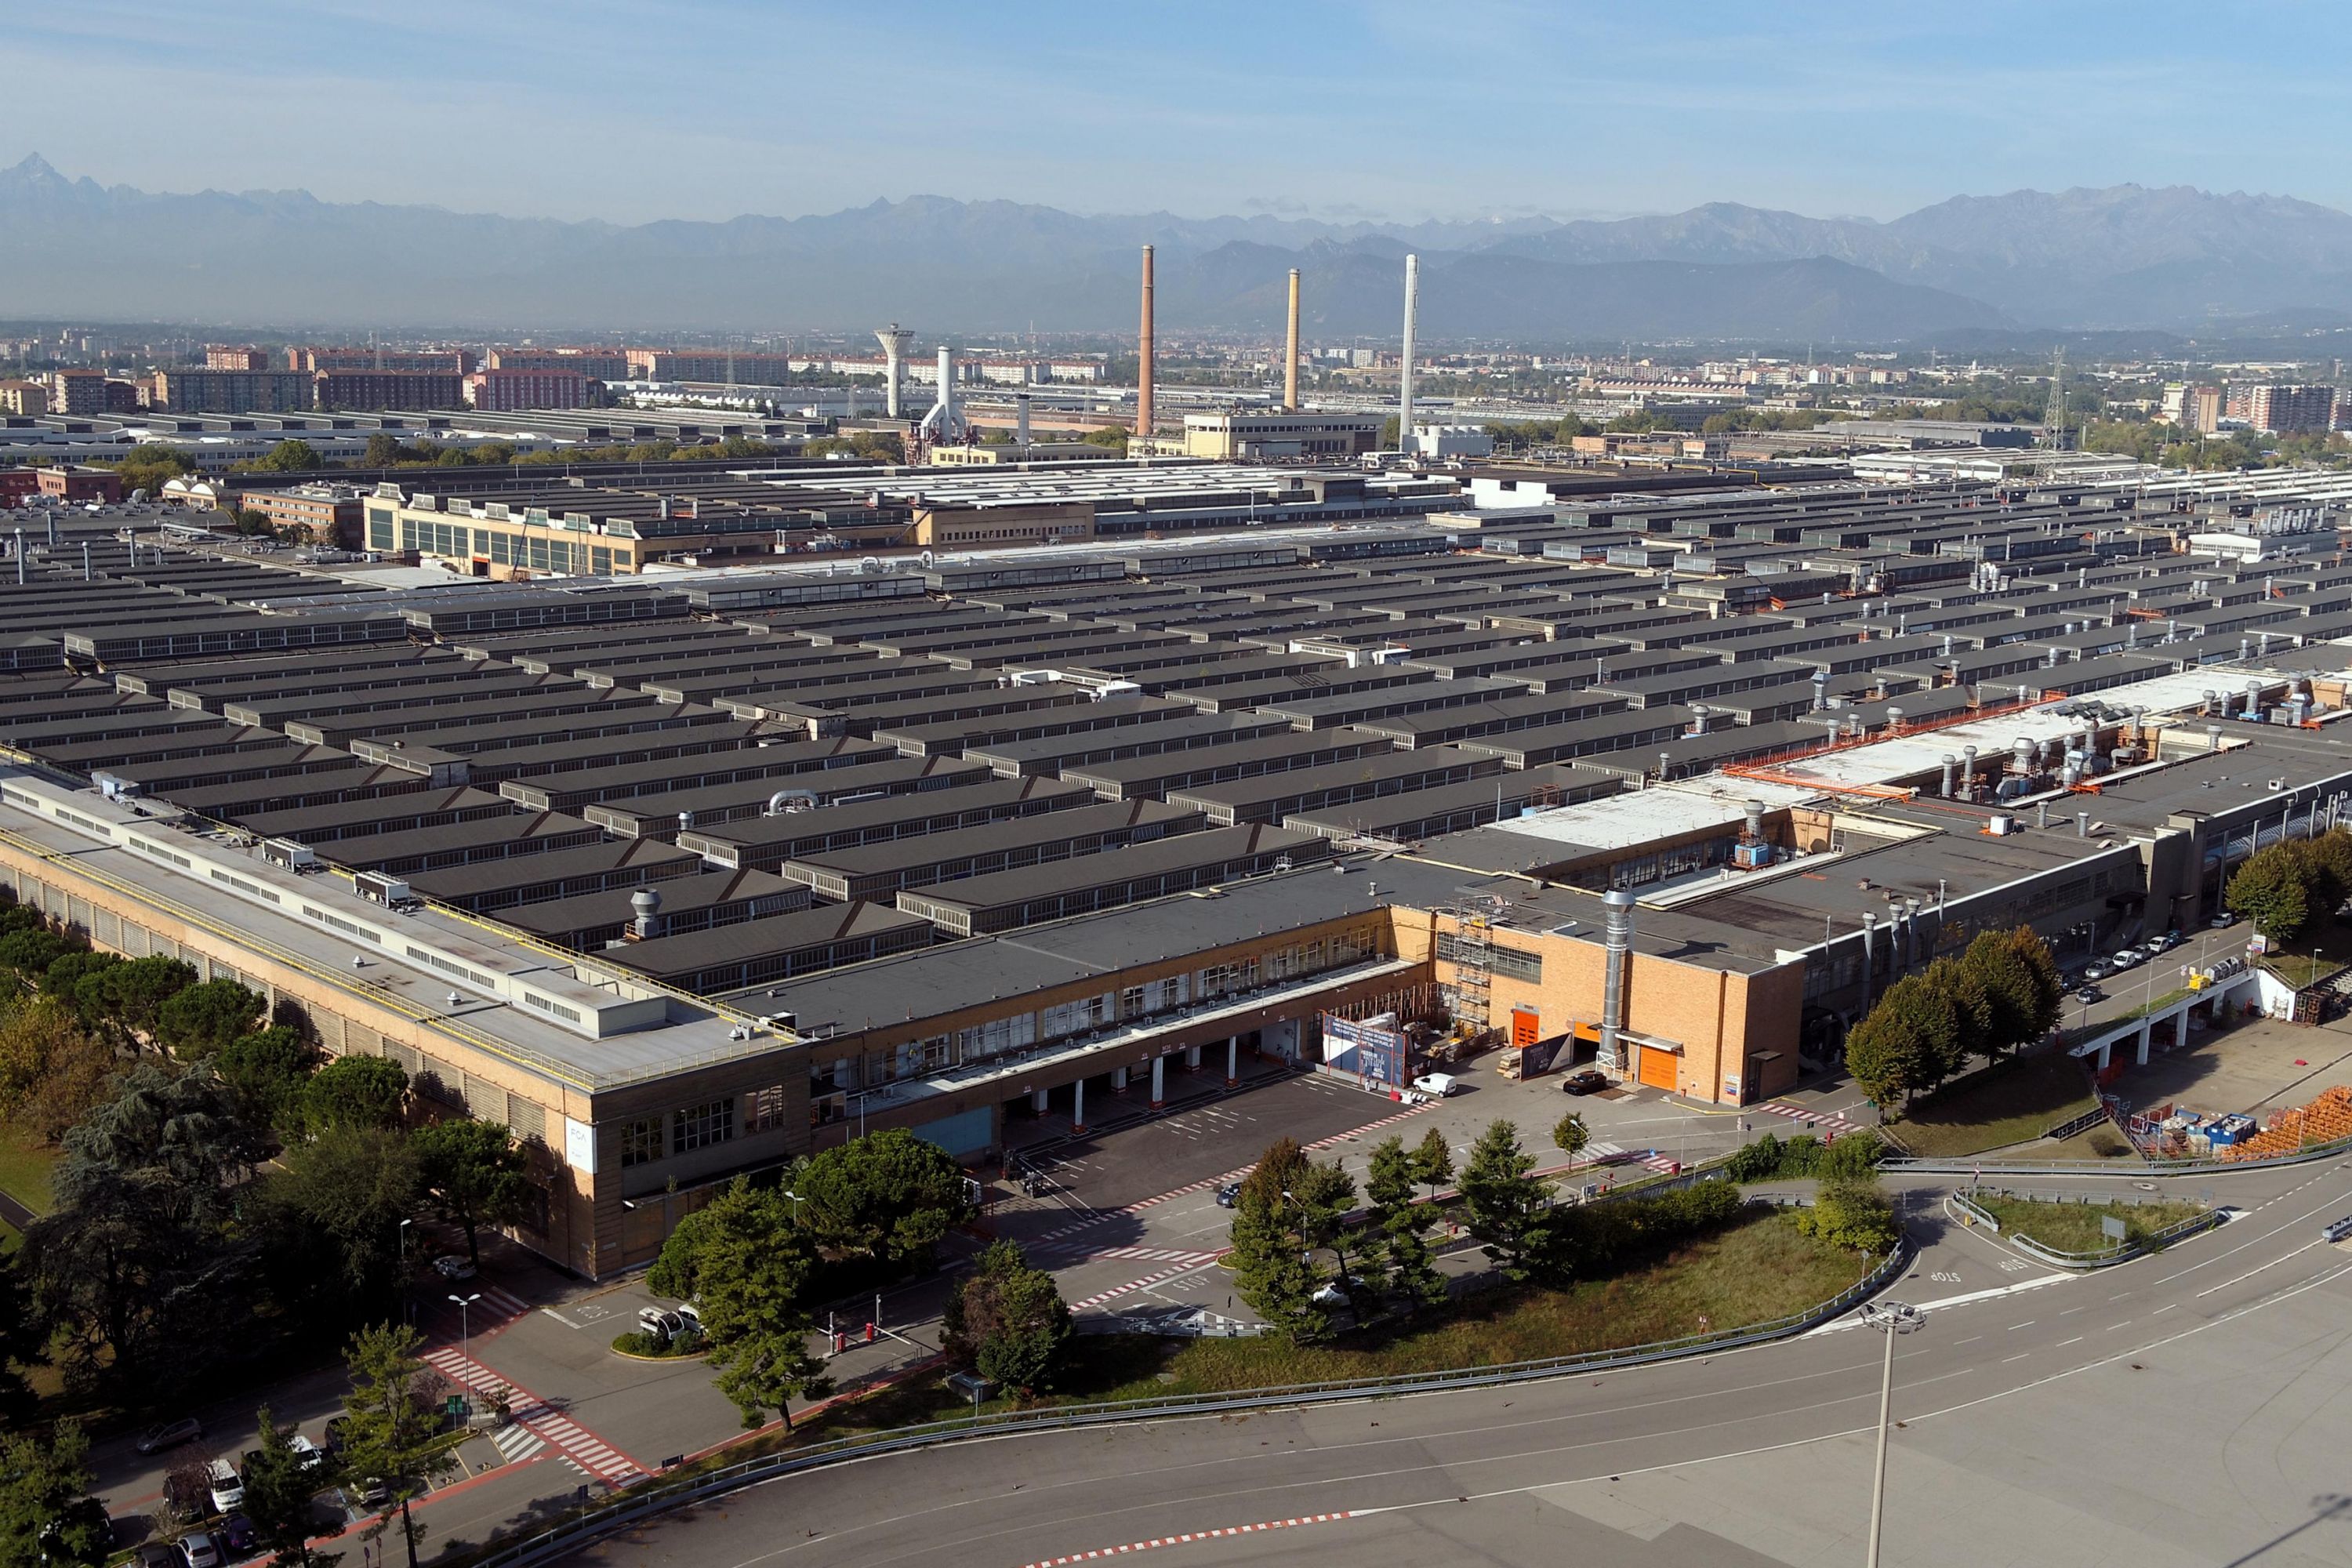 Mirafiori Stellantis factory